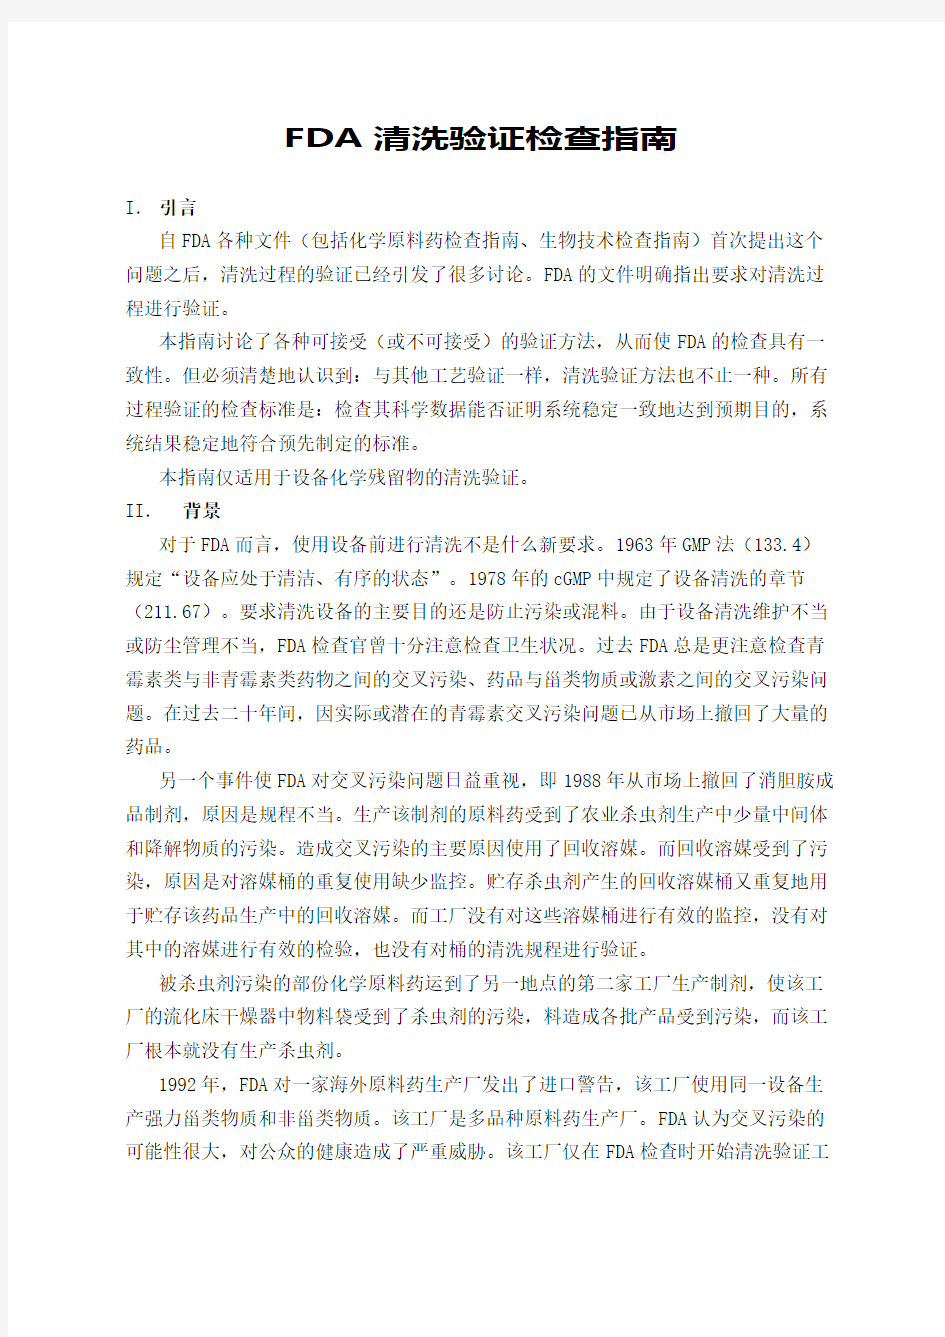 fda清洗验证指南中文